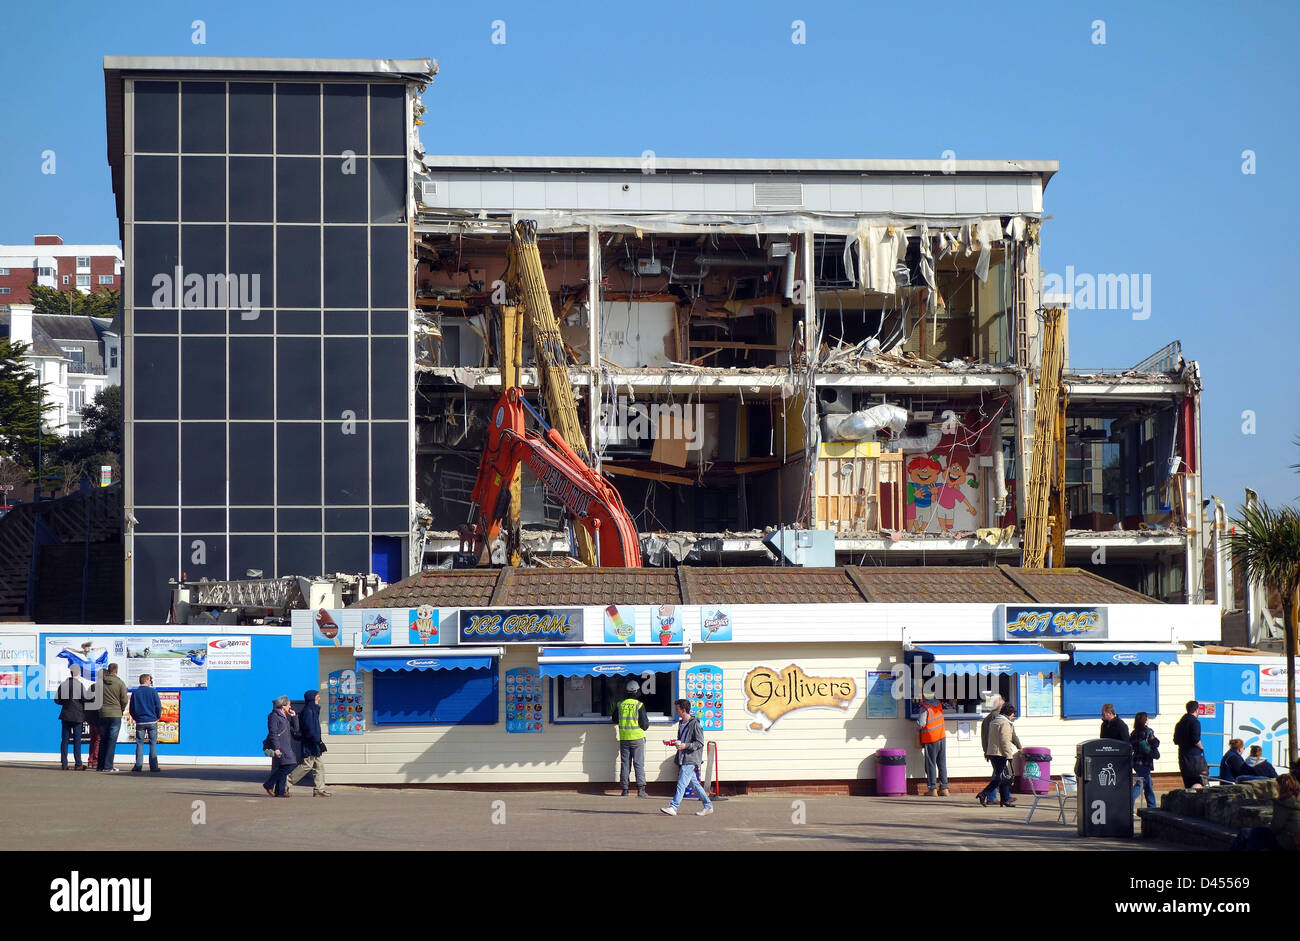 Cinéma Imax au cours de la démolition, Bournemouth, Dorset, Angleterre, Royaume-Uni Banque D'Images